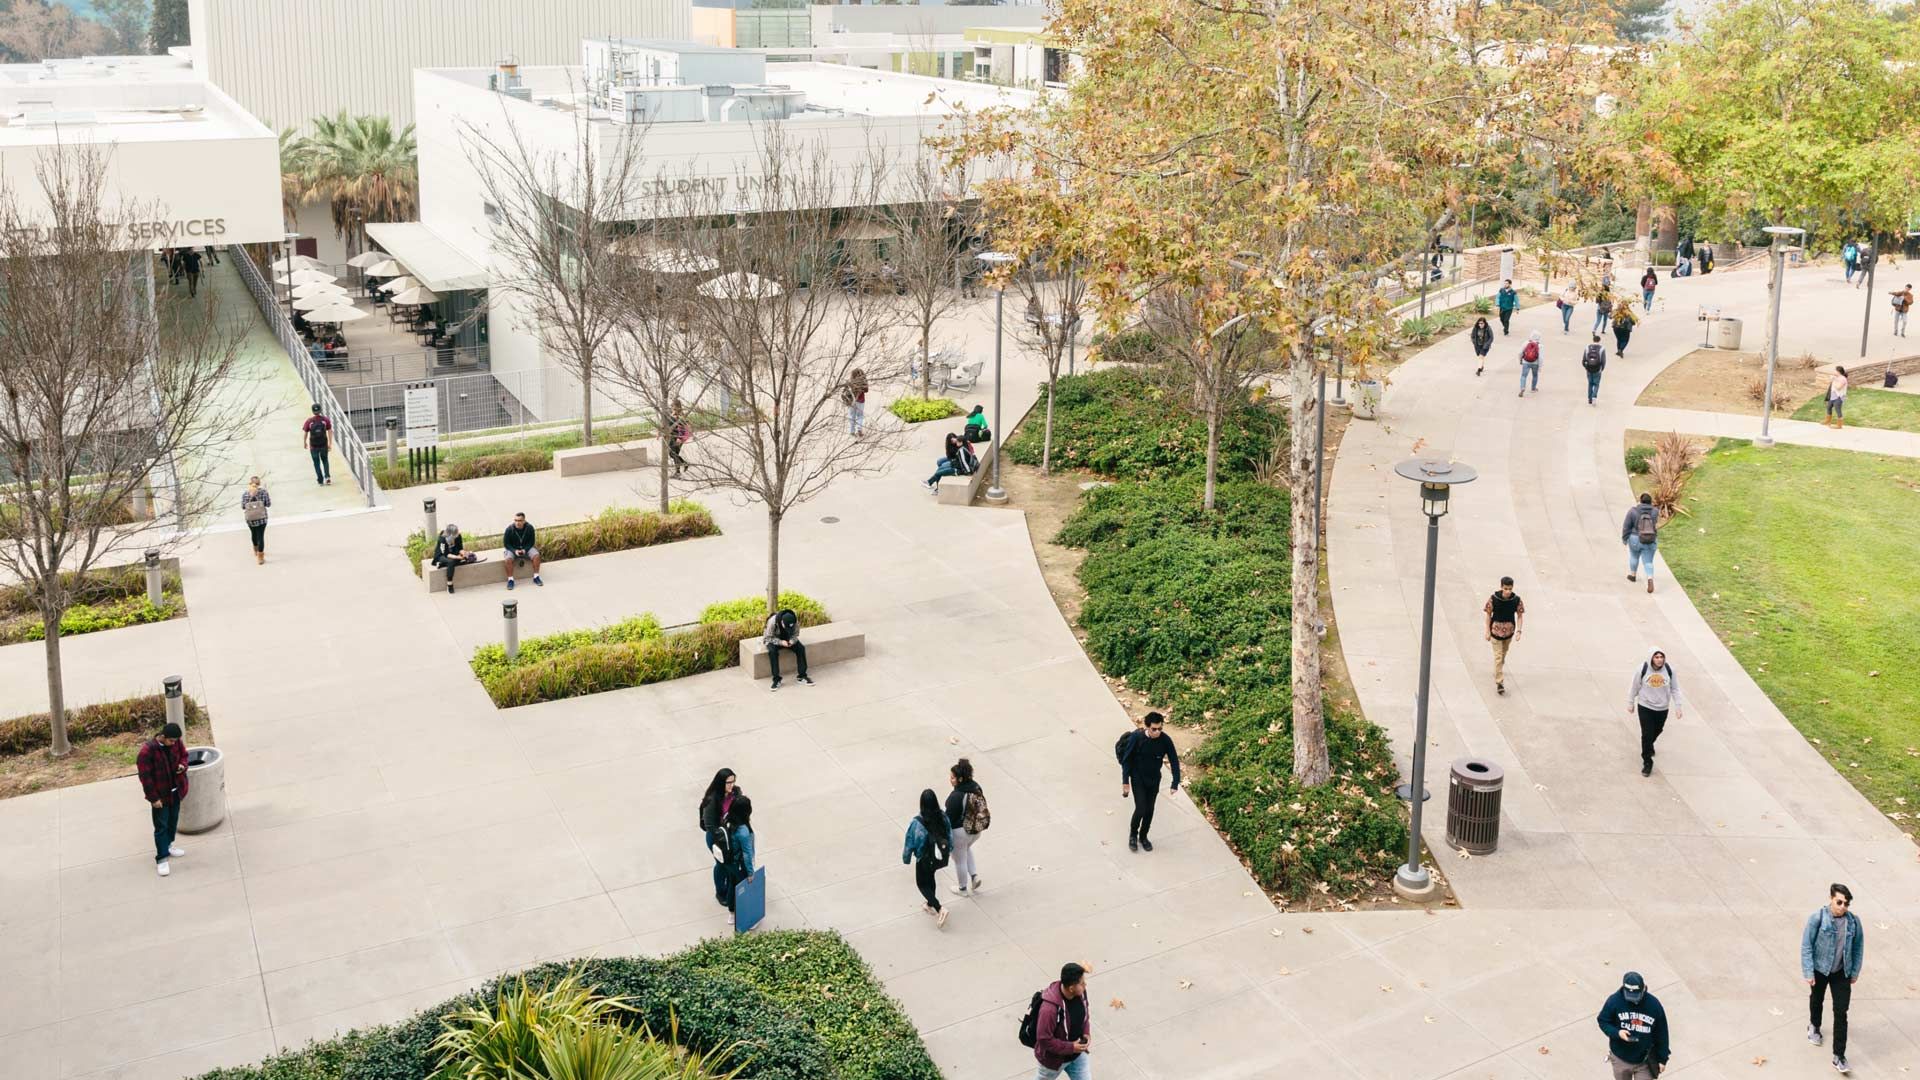 Campus universitaire avec un espace vert et des allées peuplées d'étudiants portant des sacs à dos